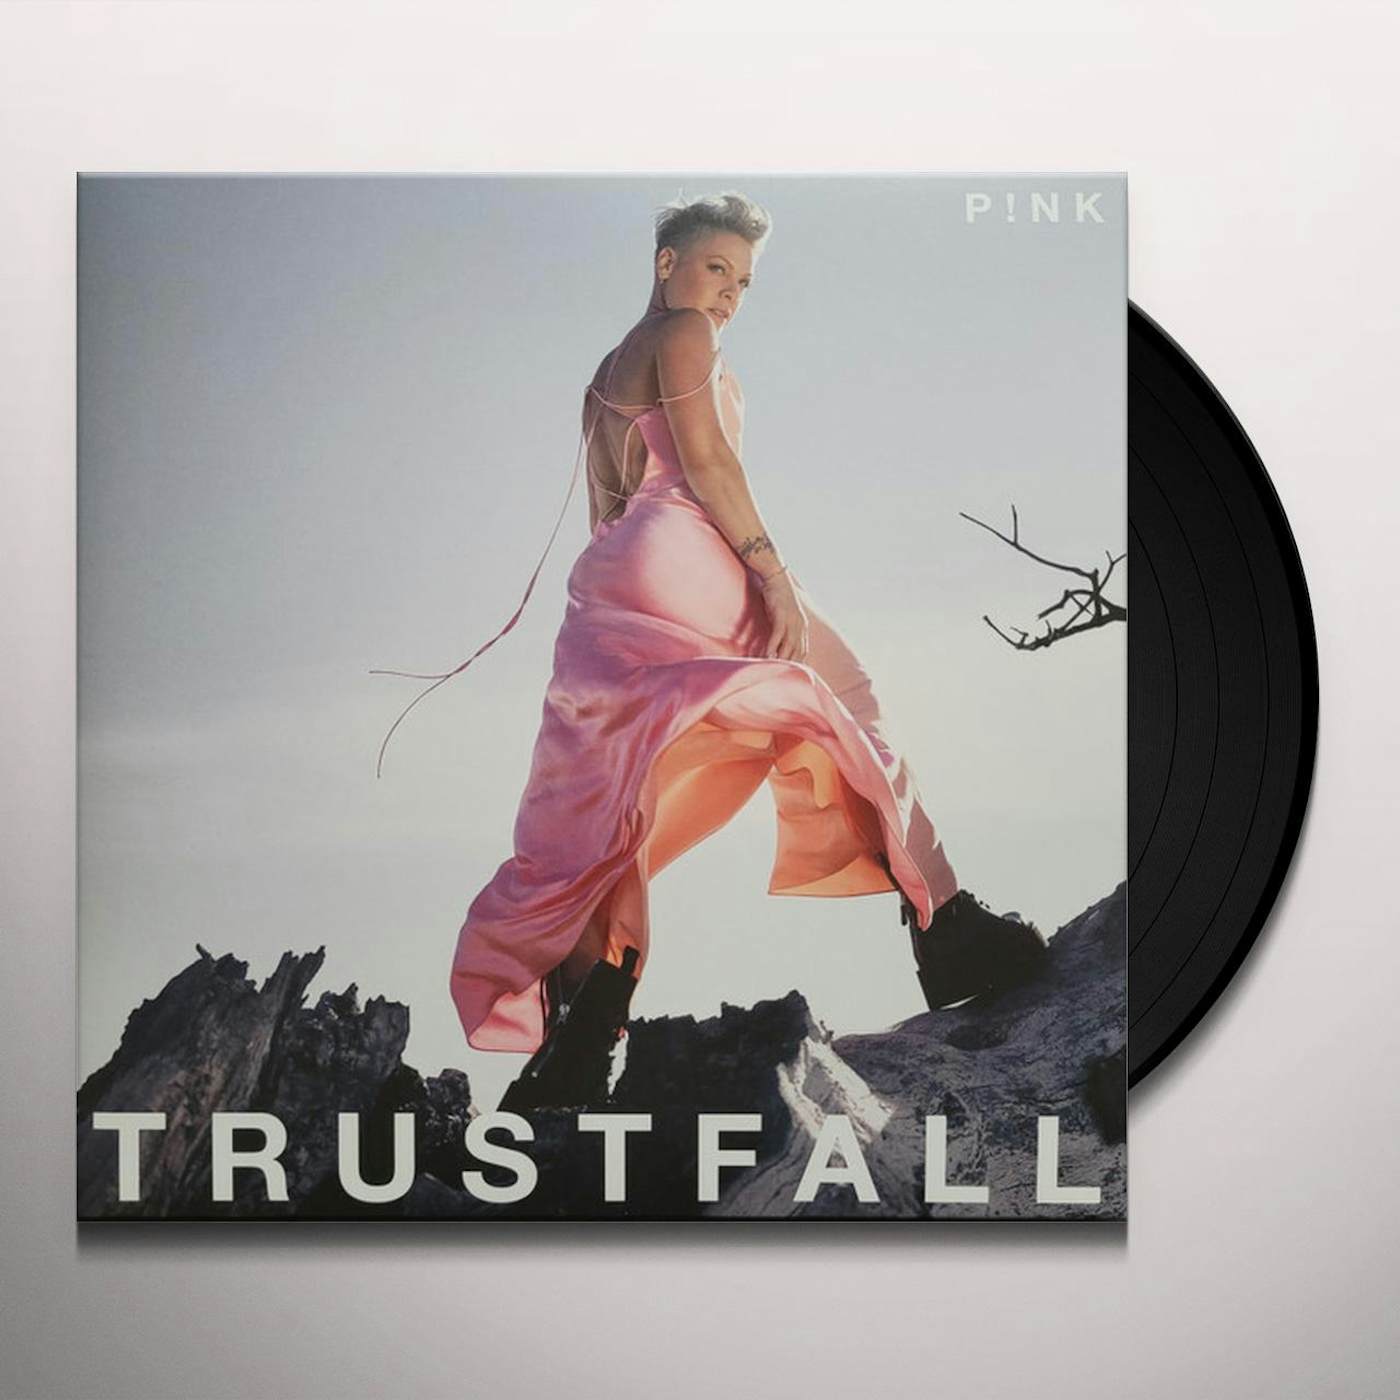 TRUSTFALL (P!nk VINYL) Vinyl Record